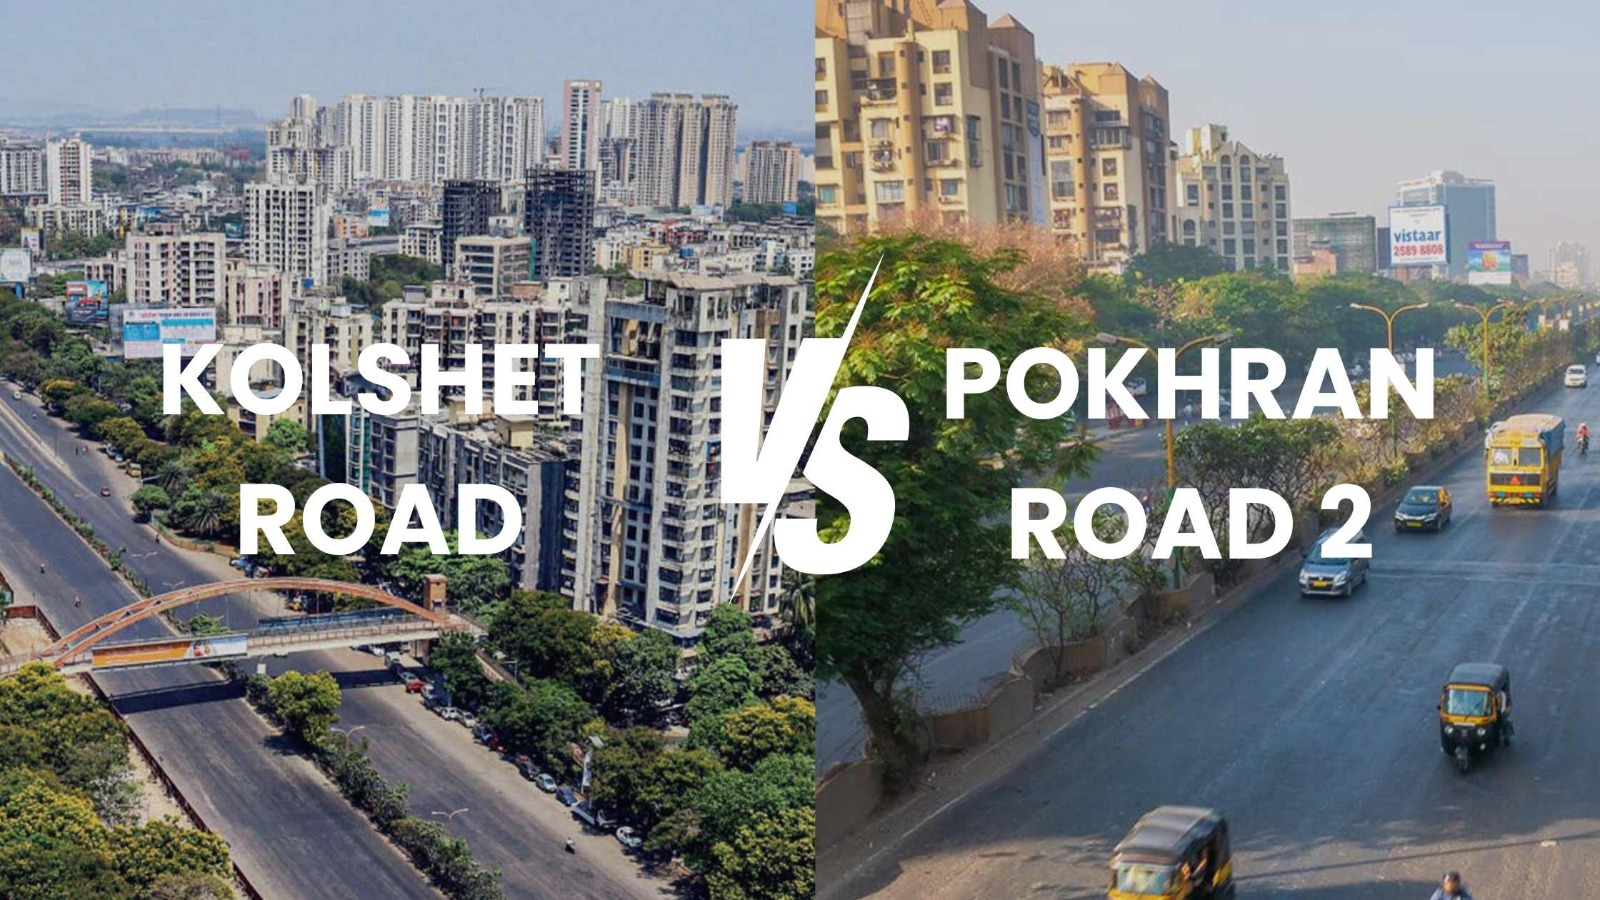 Kolshet Or Pokhran Road 2 Which Is The Best